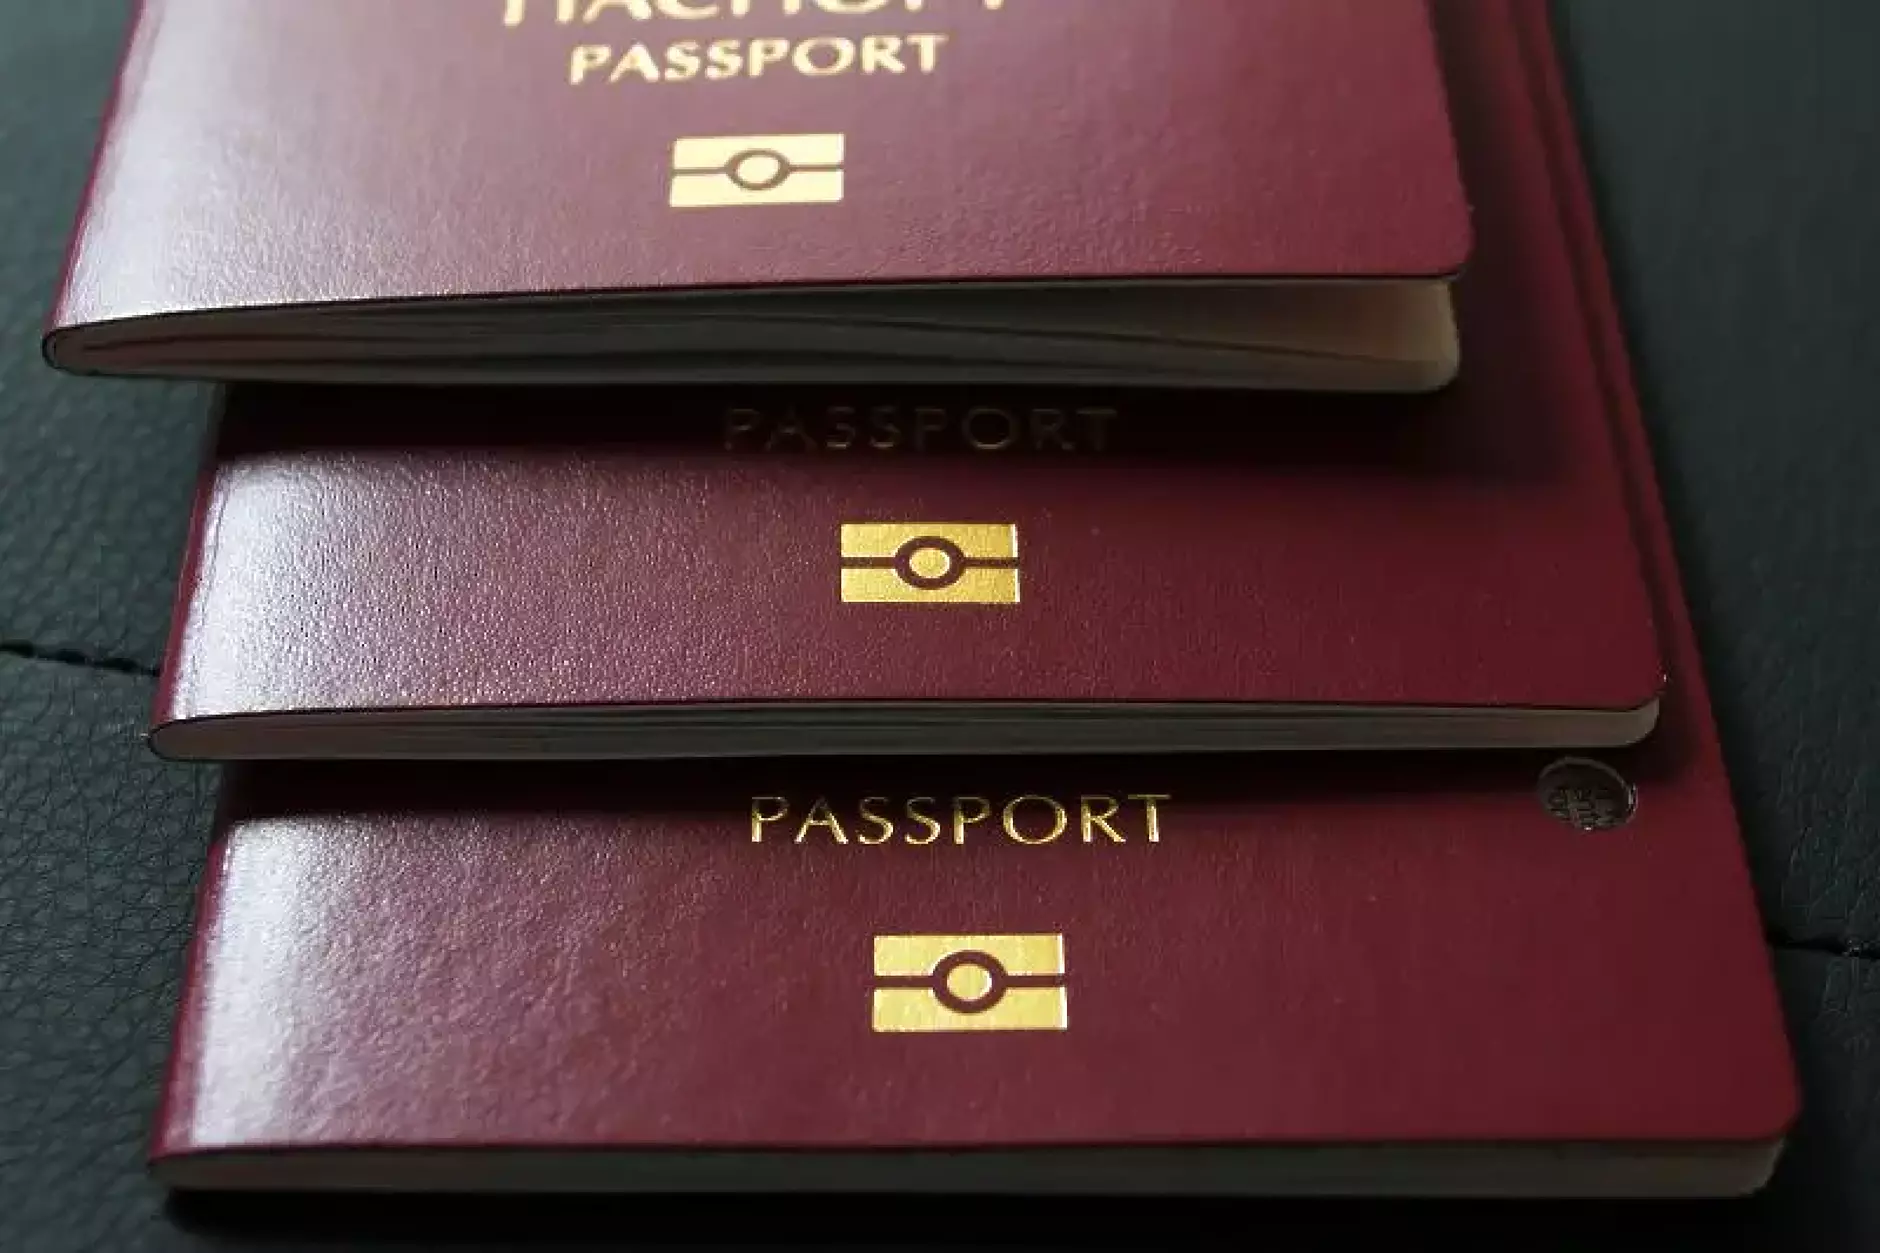 Над 109 хил. души в България са без лични документи